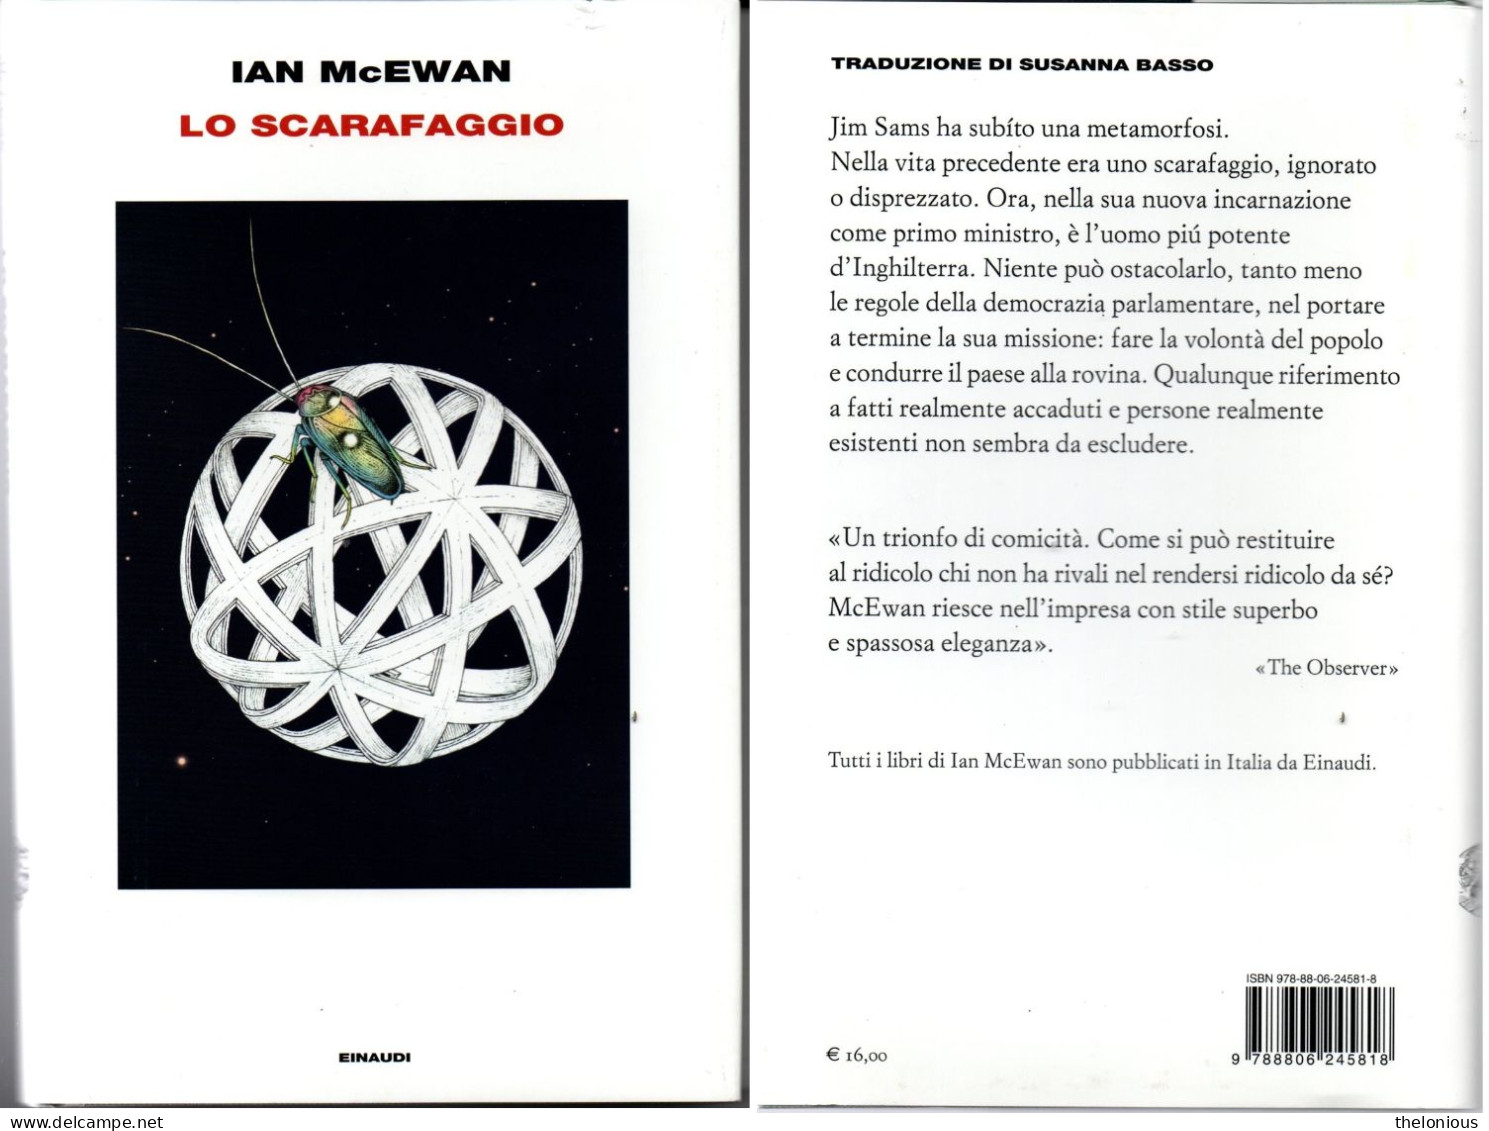 # IAN McEWAN - LO SCARAFAGGIO - EINAUDI 2020 (perfetto Come Nuovo) - Grandes Autores